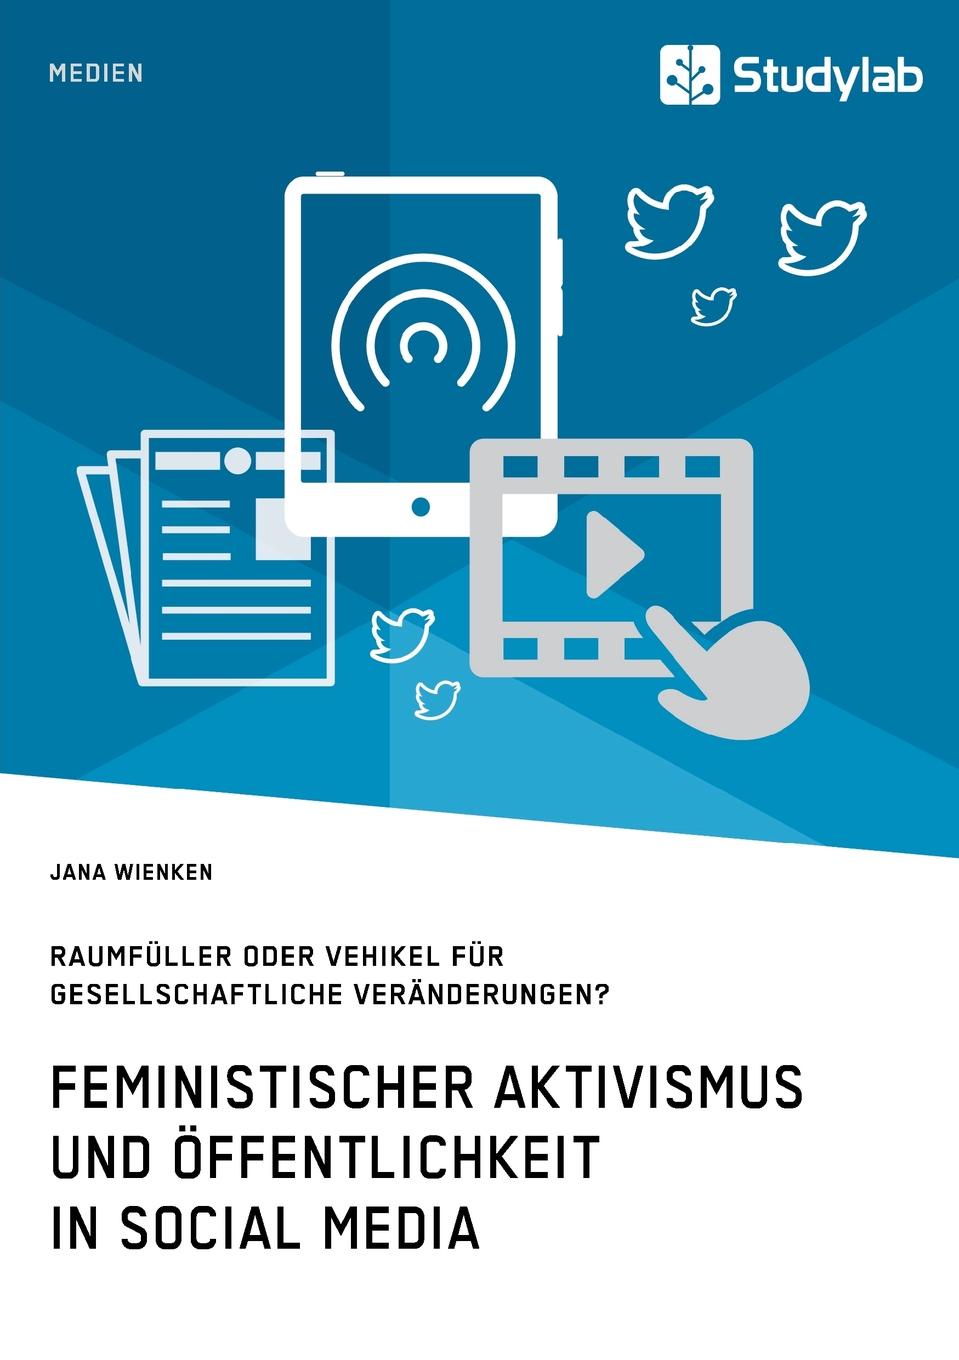 Feministischer Aktivismus und Offentlichkeit in Social Media. Raumfuller oder Vehikel fur gesellschaftliche Veranderungen.